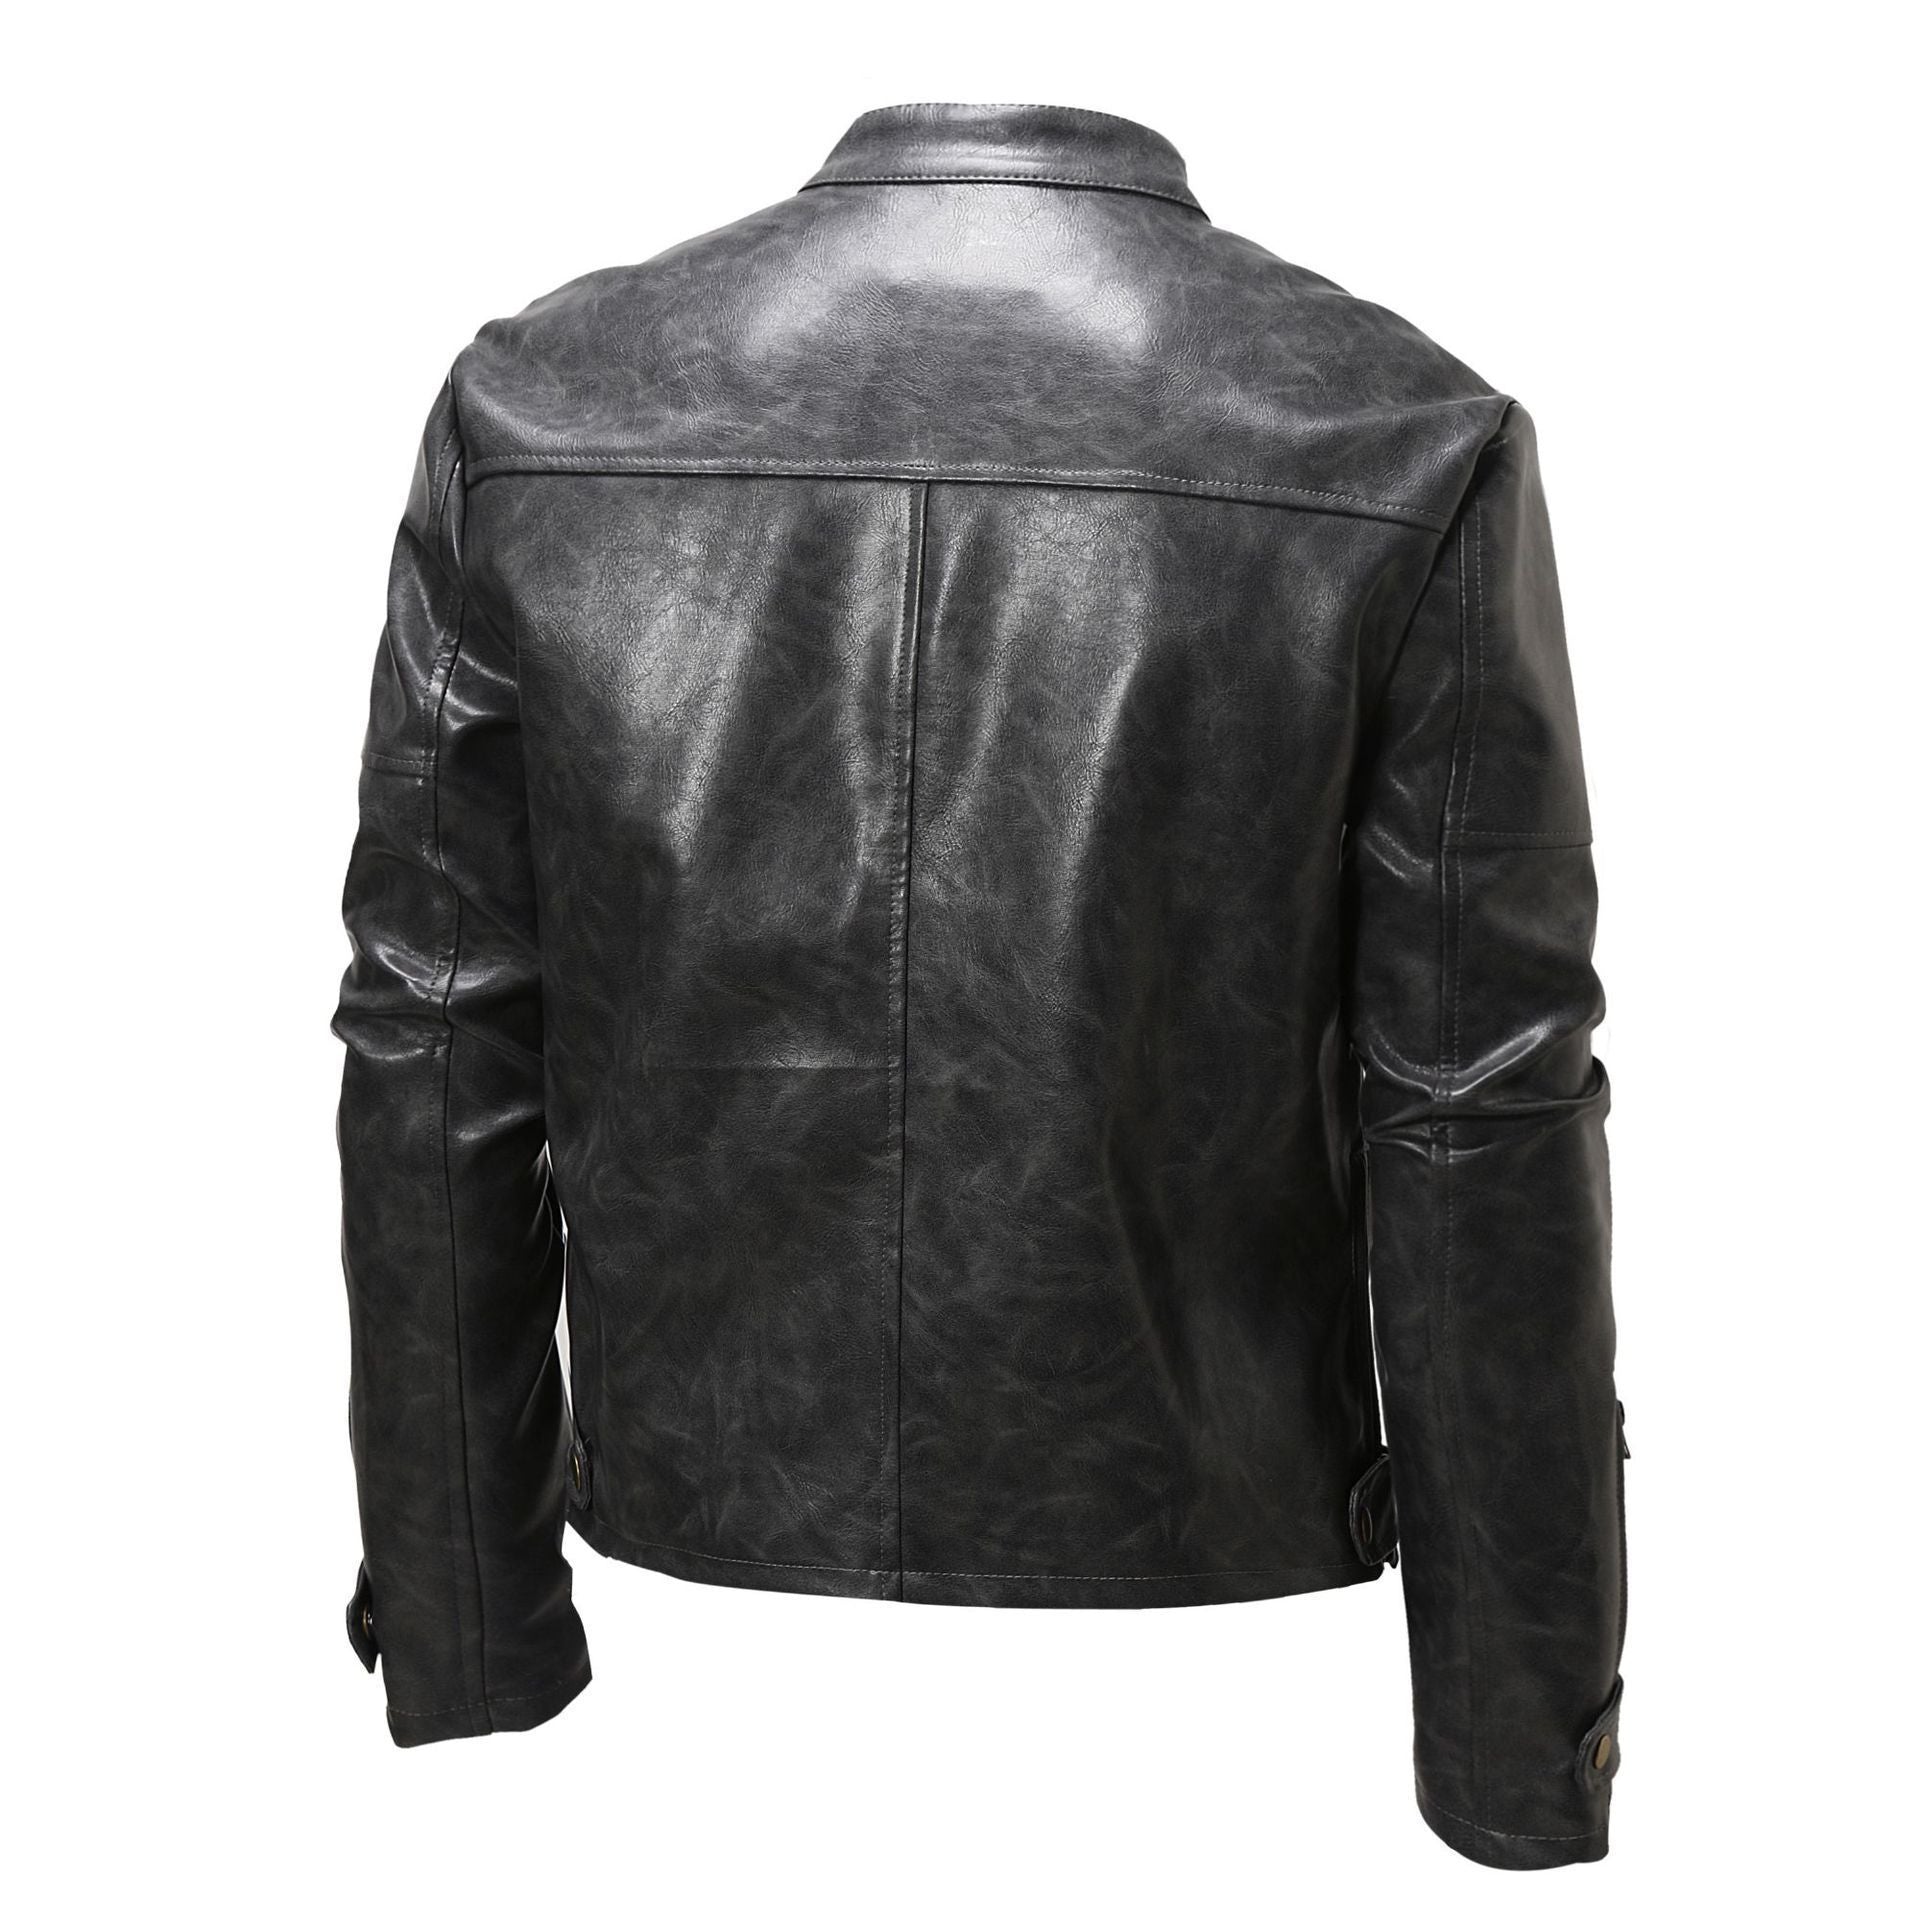 Men's Stand Collar Vintage Leather Biker Jacket